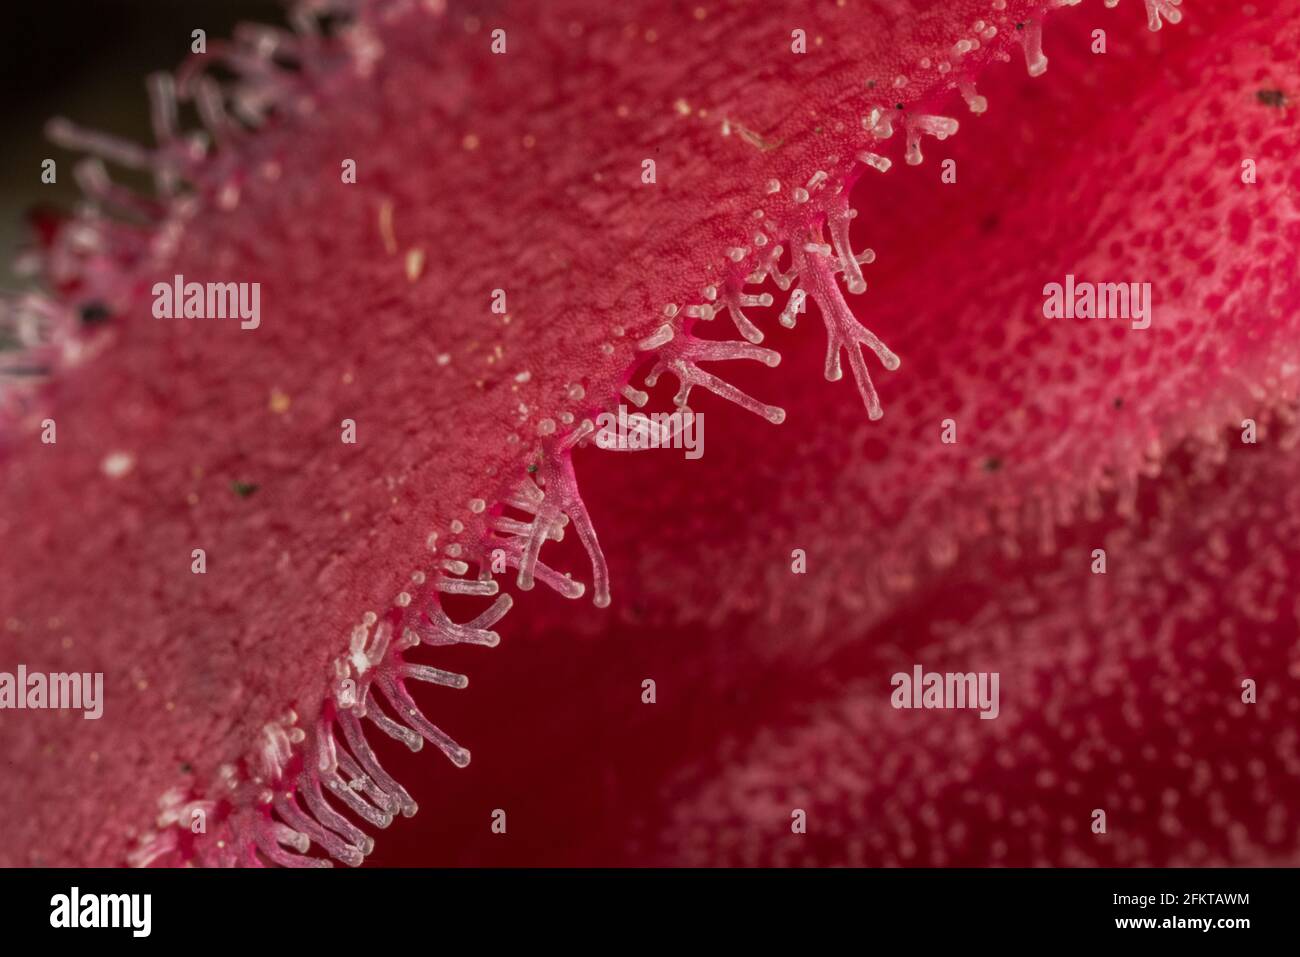 Eine Nahaufnahme der klebrigen Drüsenhaare, die die Schneepflanze (Sarcodes sanguinea) in Kalifornien bedecken. Stockfoto